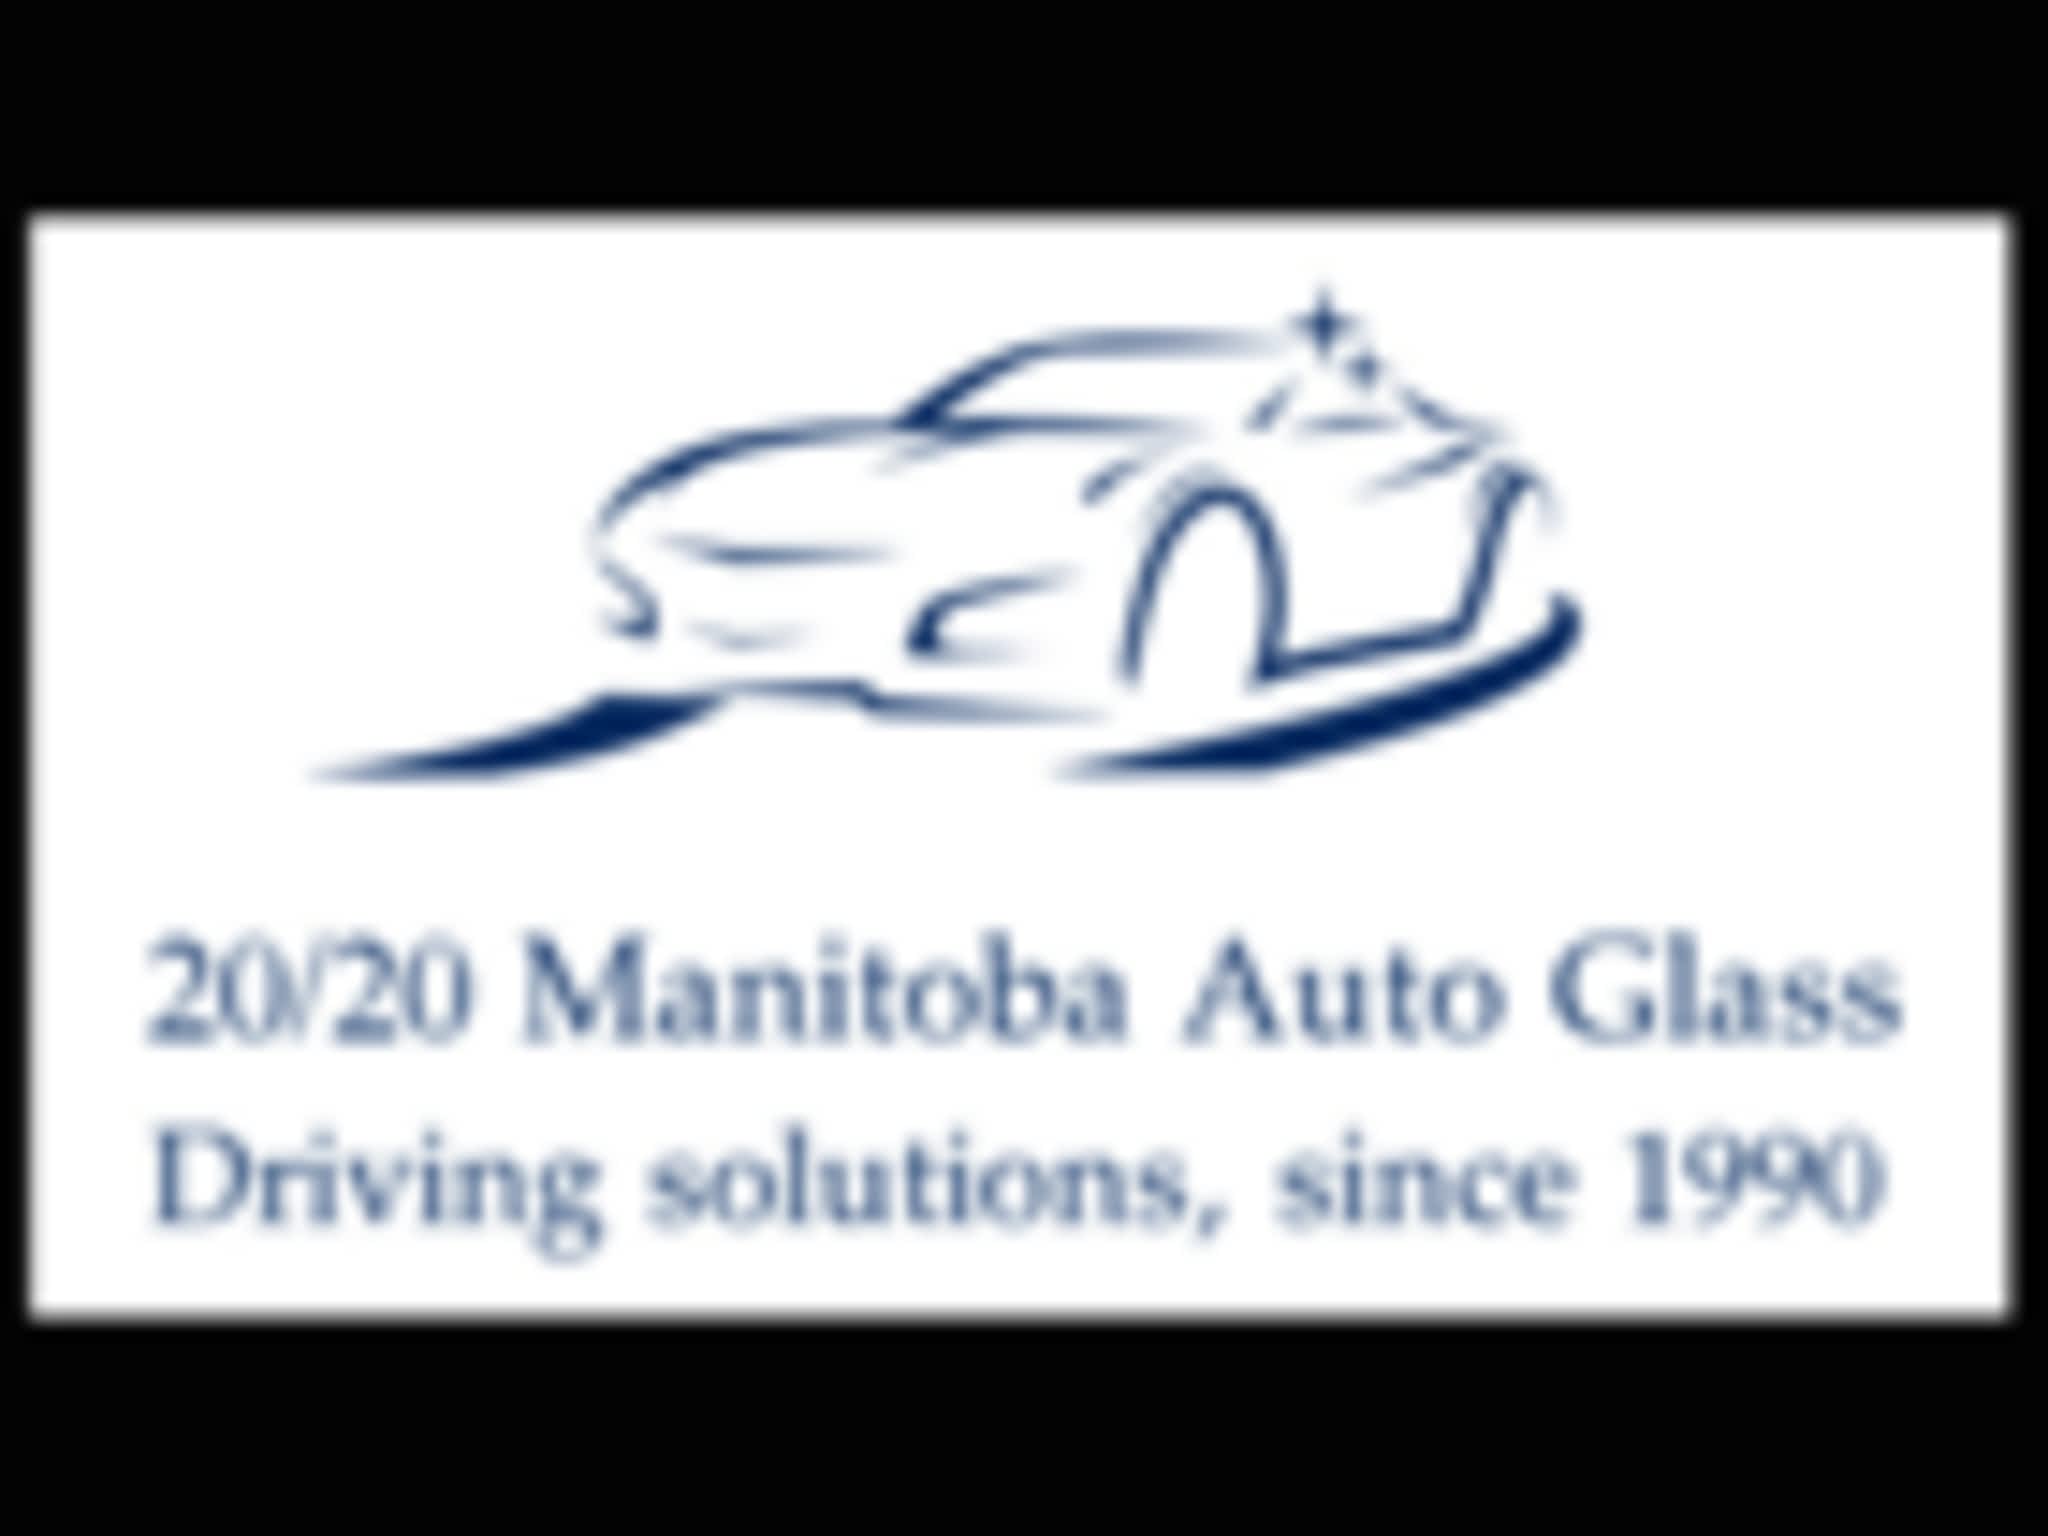 photo 20/20 Manitoba Auto Glass